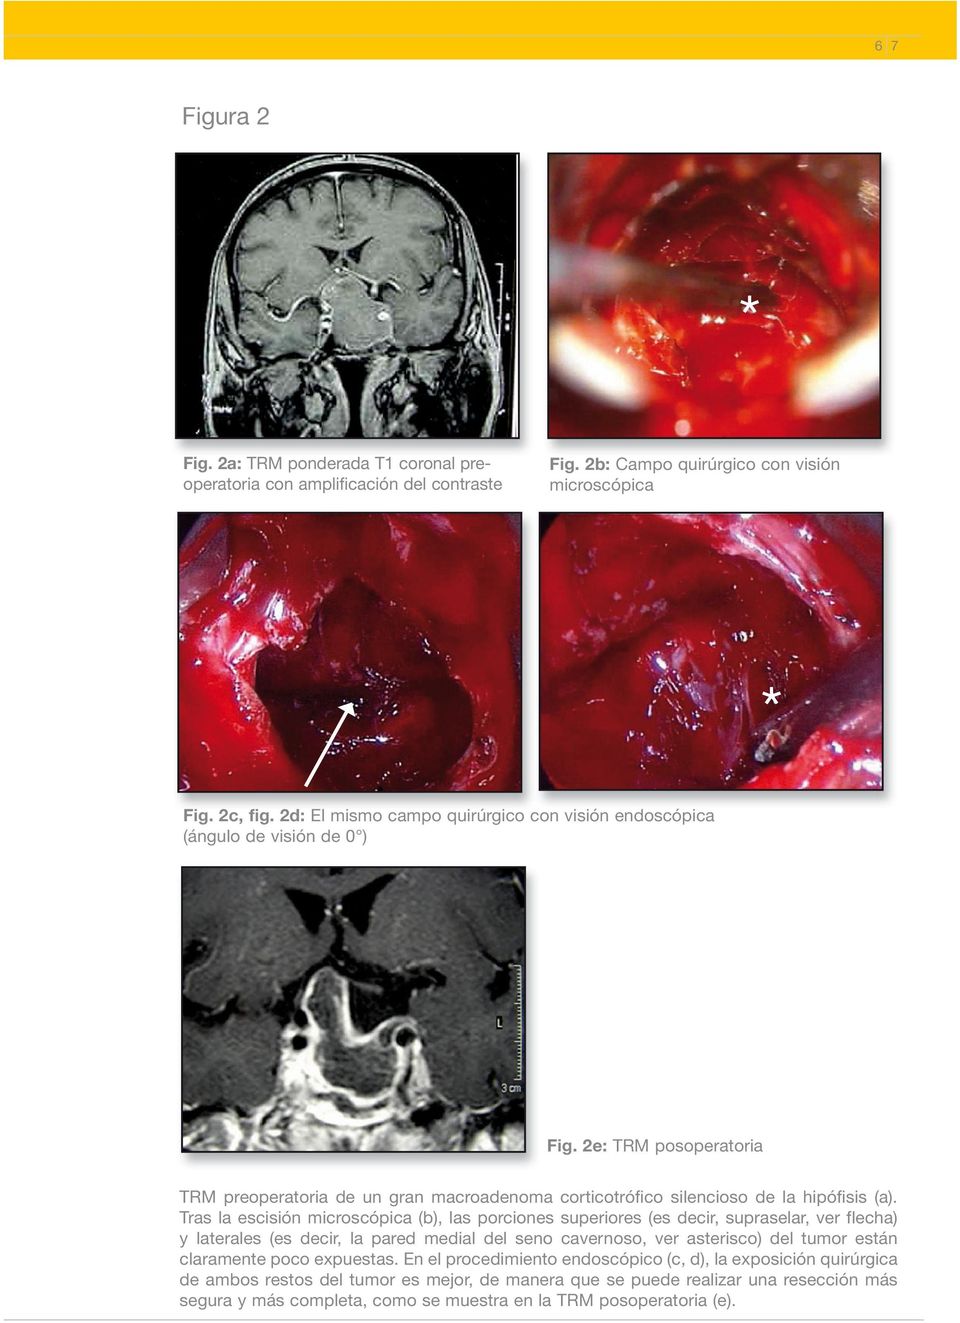 Tras la escisión microscópica (b), las porciones superiores (es decir, supraselar, ver flecha) y laterales (es decir, la pared medial del seno cavernoso, ver asterisco) del tumor están claramente